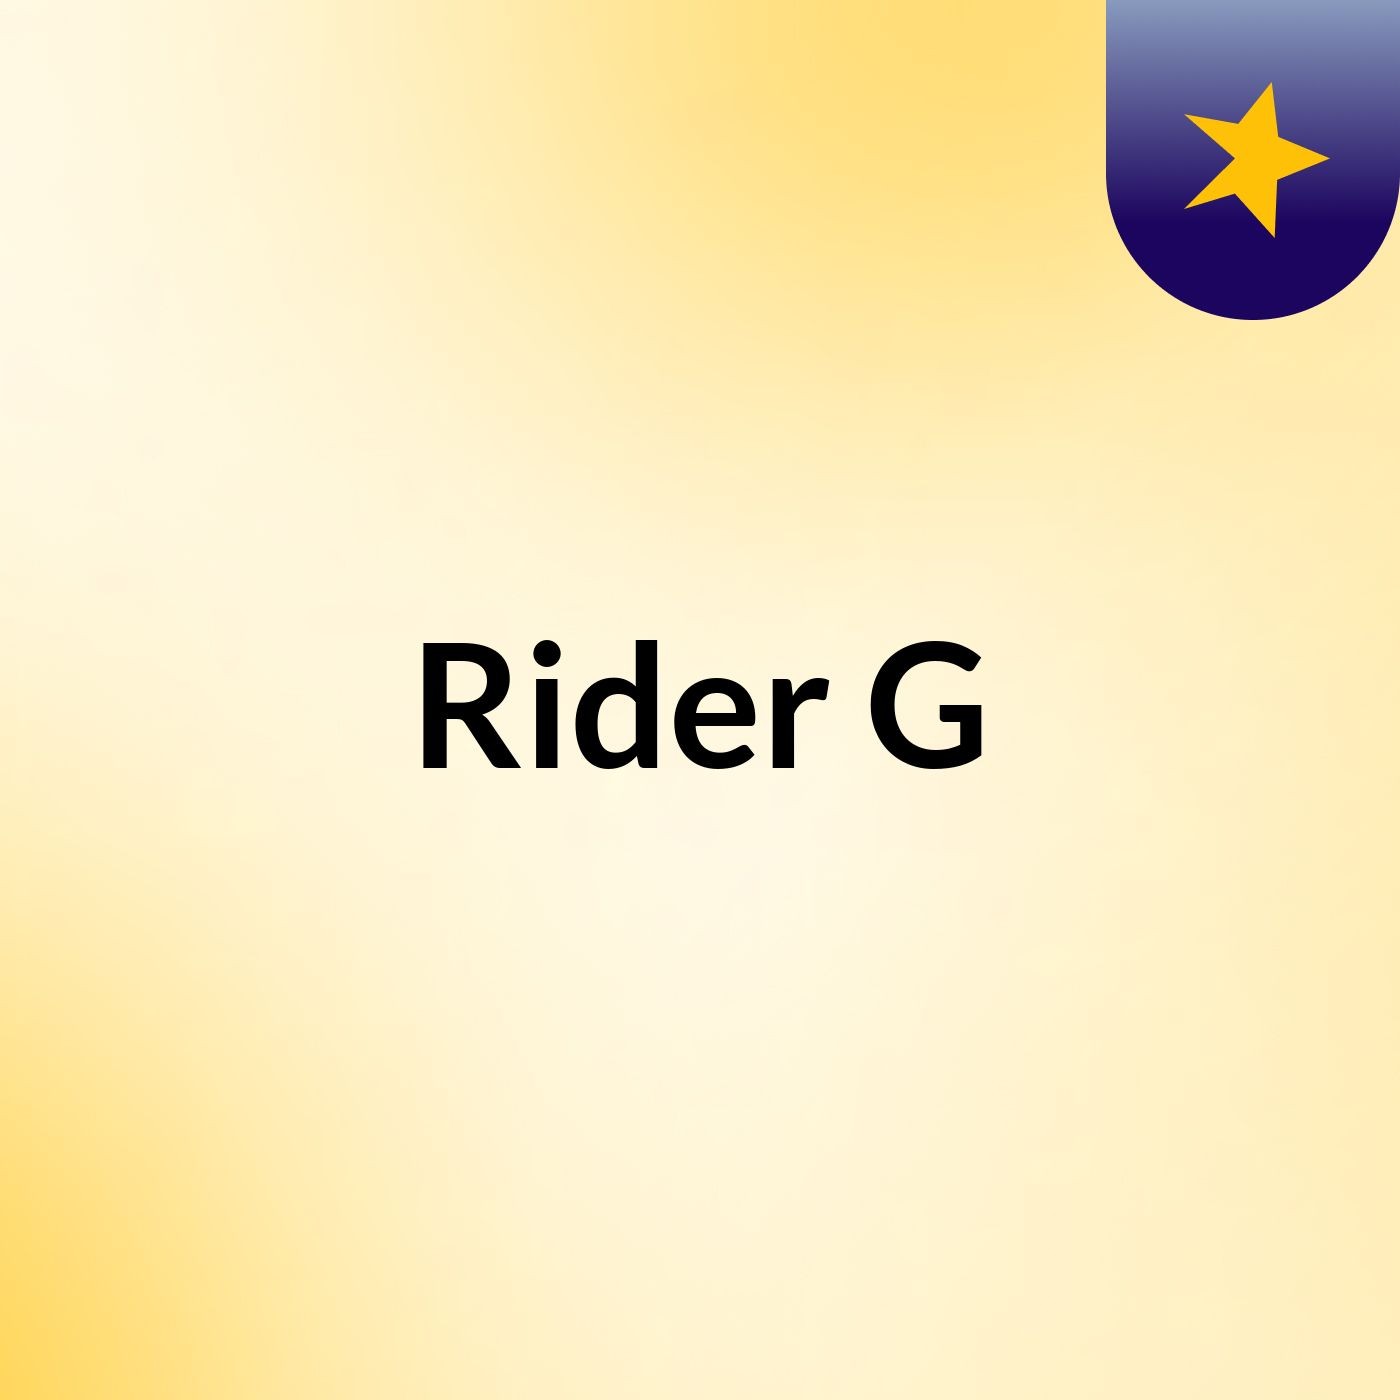 Rider G